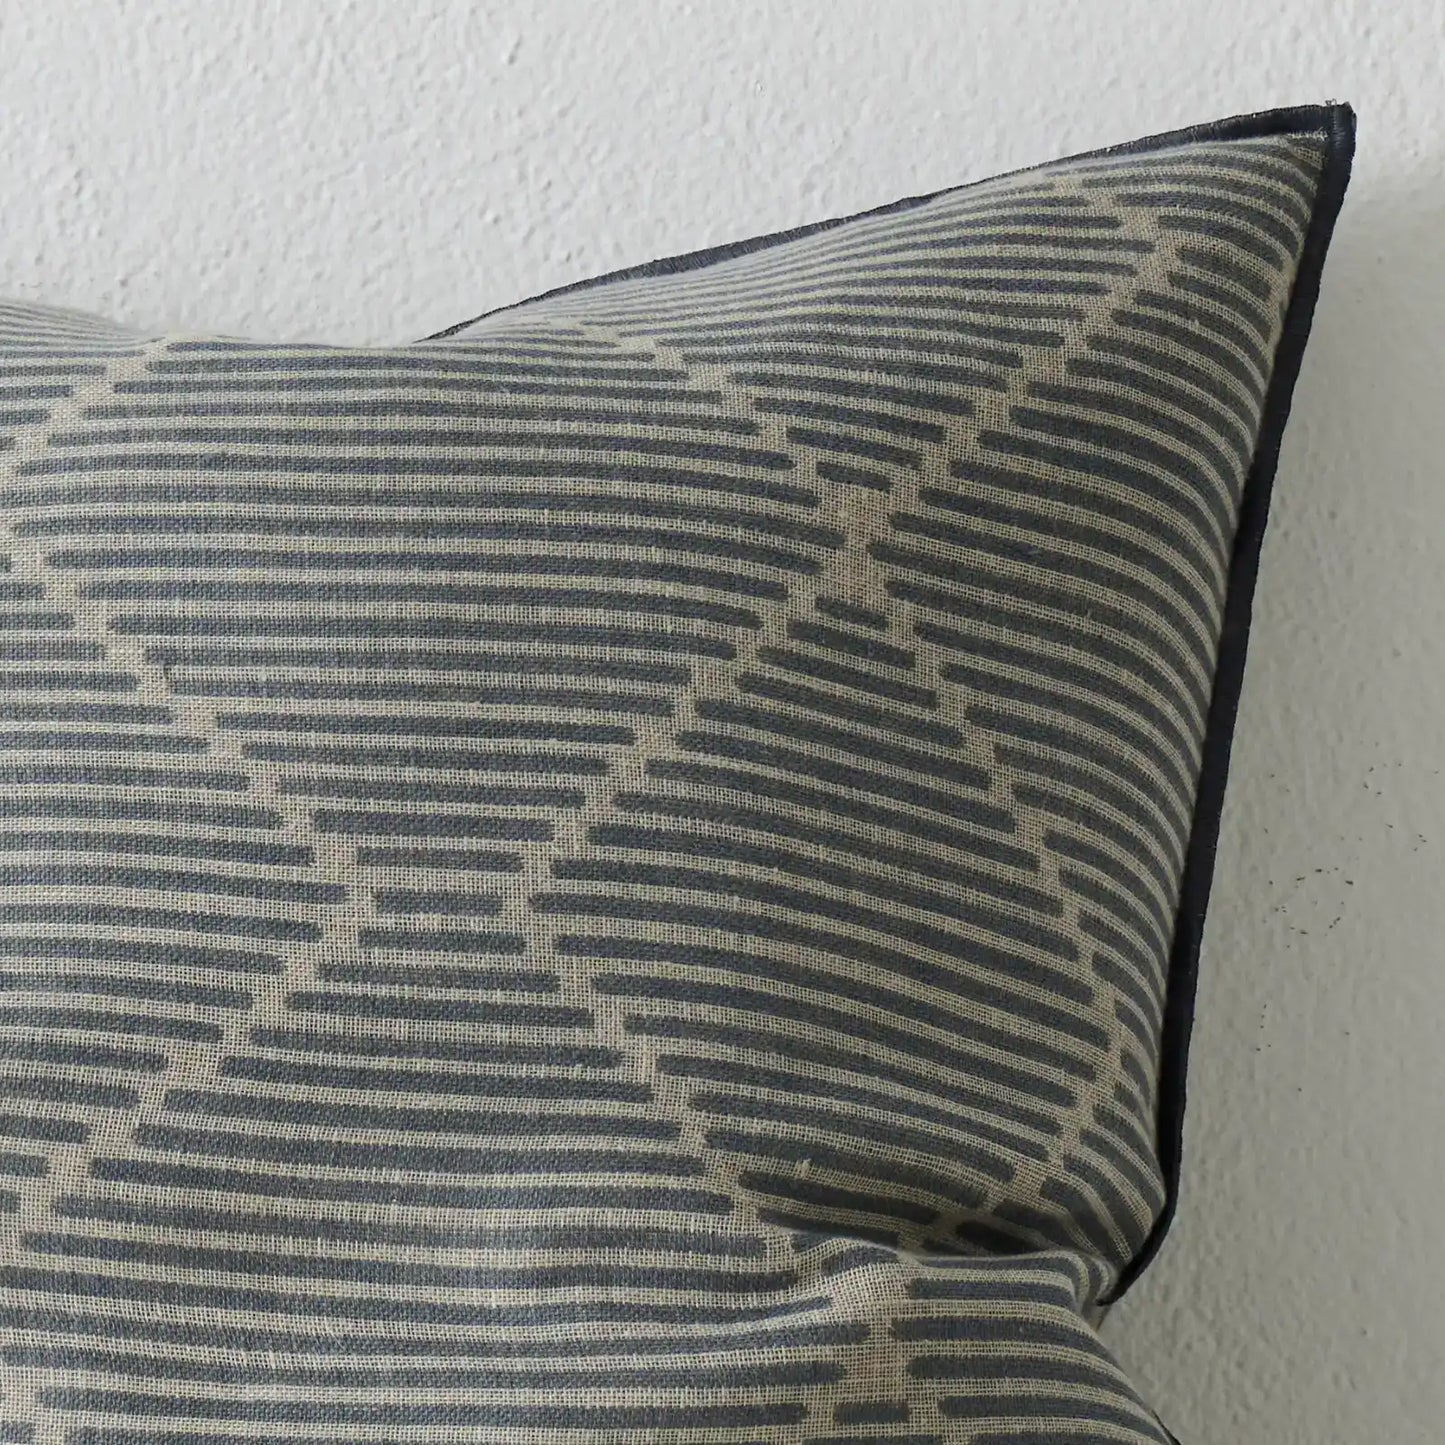 Edgecliff linen cushion cover 50cm